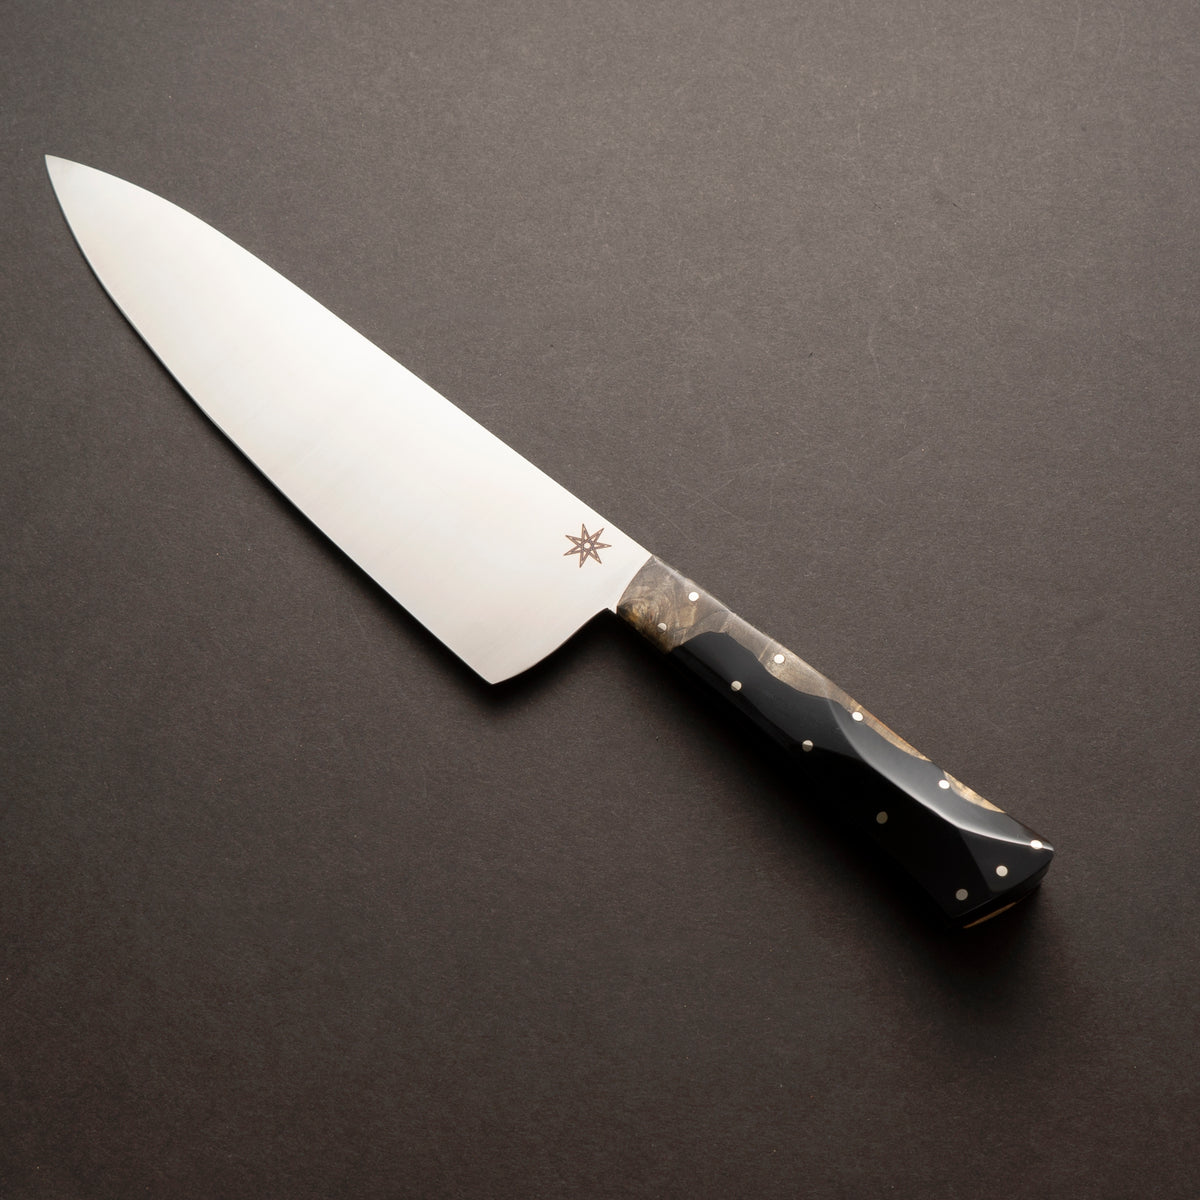 Knife Sets for sale in Sparks, Nevada